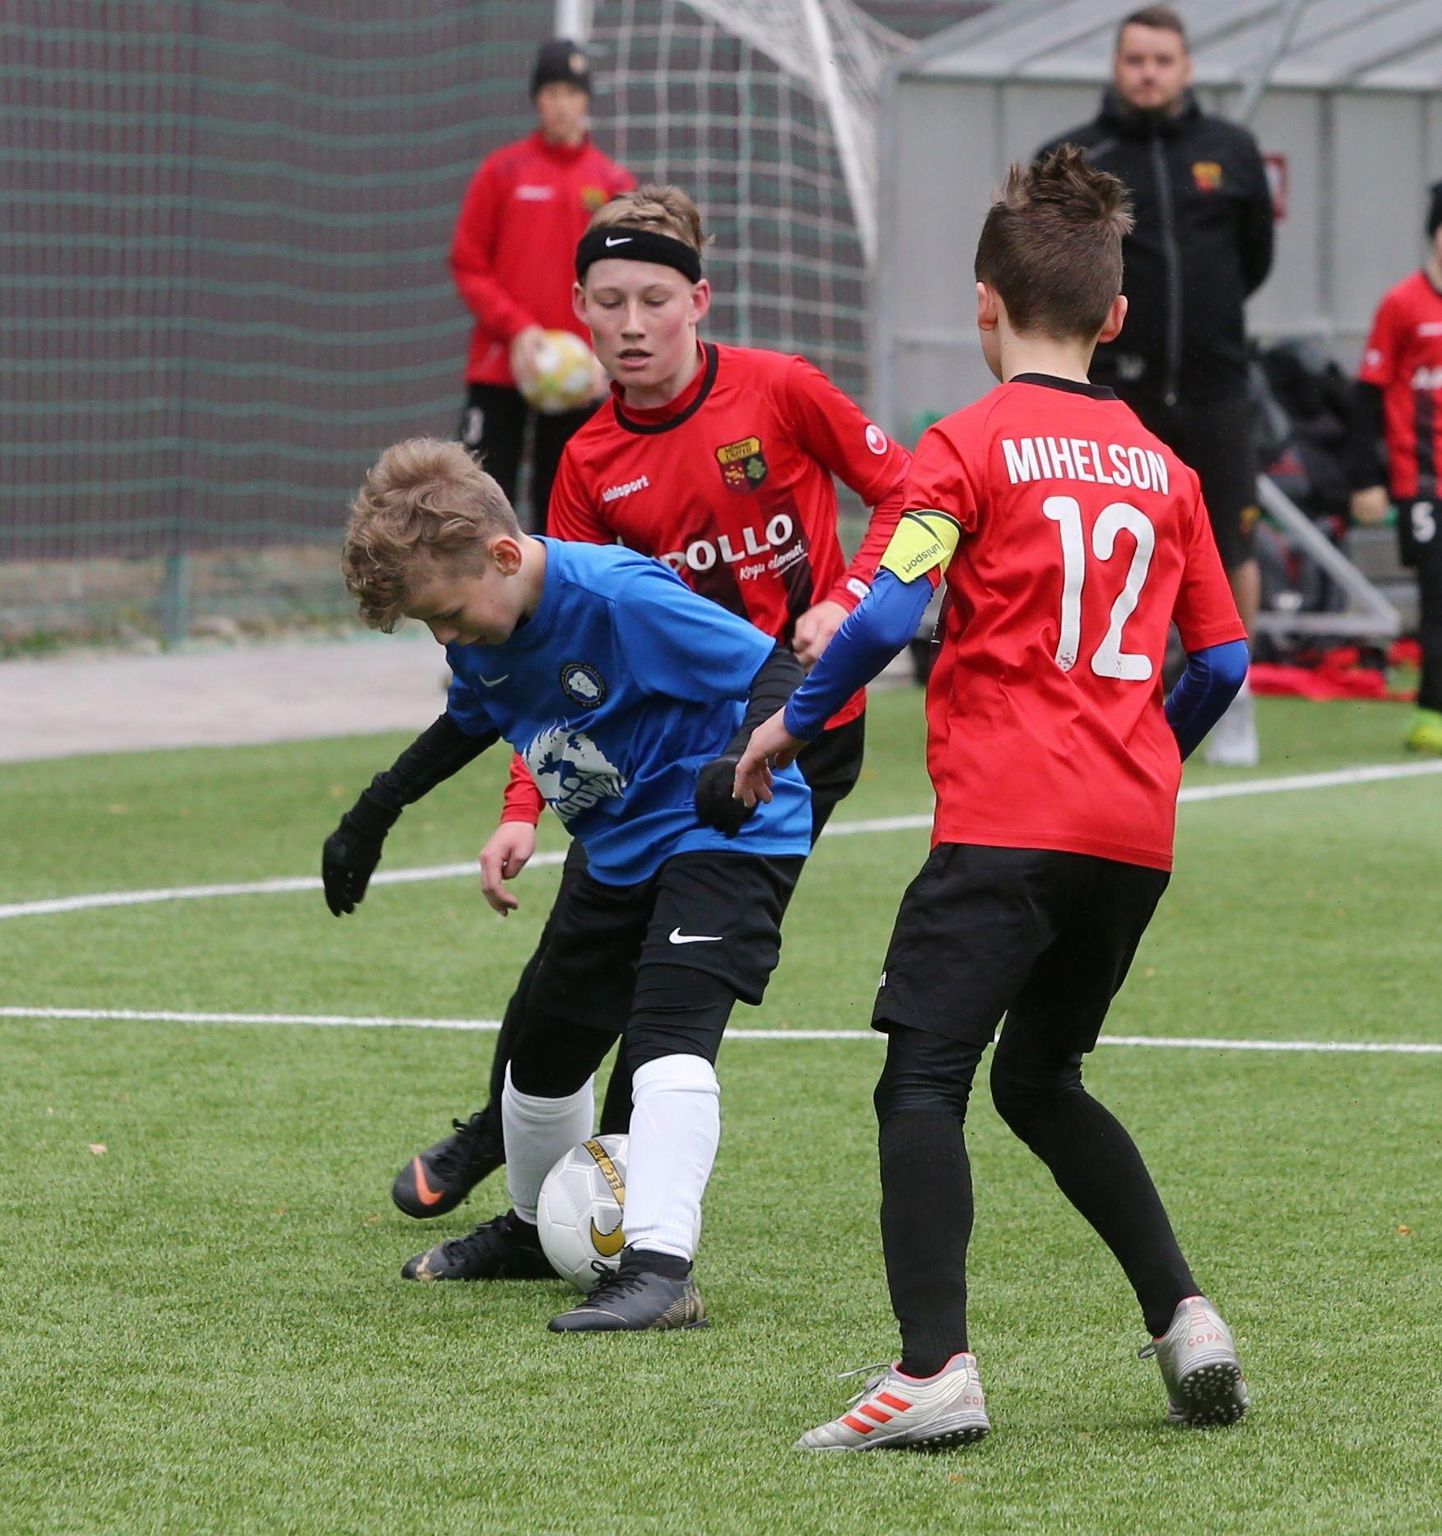 Noored jalgpallurid kogunevad pallimurule paljudes paikades üle Eesti. Foto on illustratiivne.
Sille Annuk/Pm/scanpix Baltics